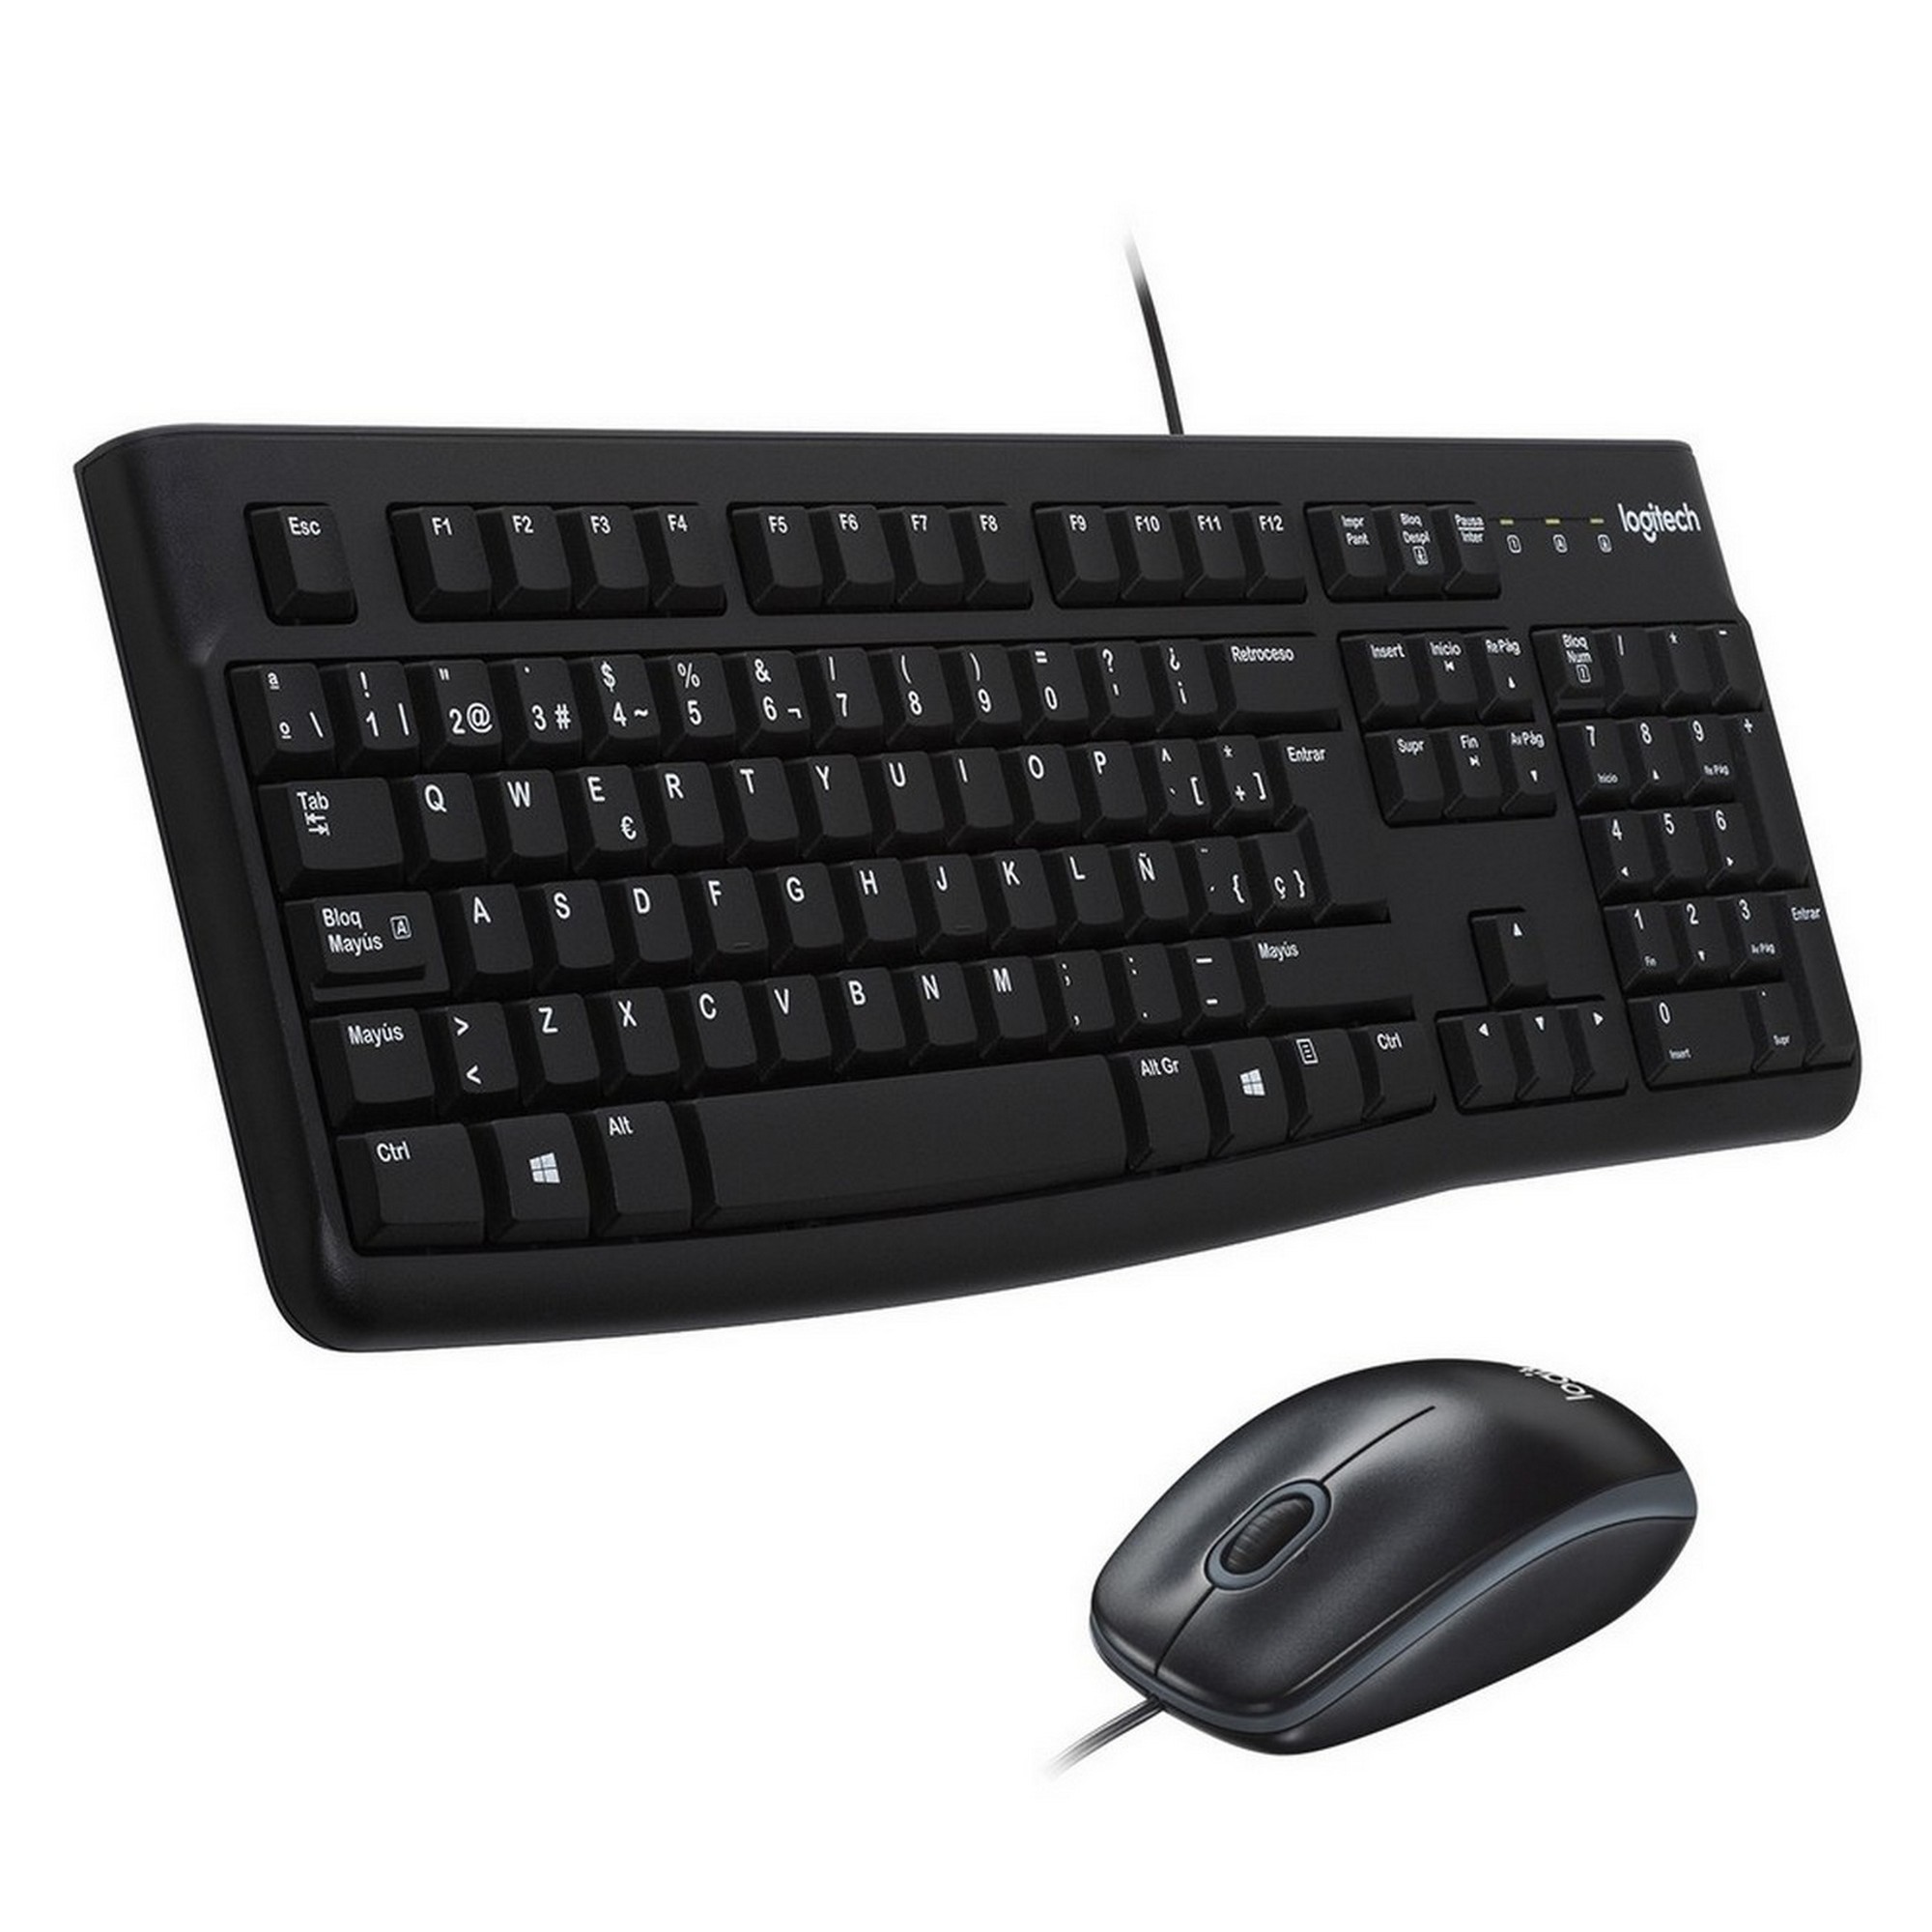 Клавиатура+мышь Logitech Desktop MK120, USB, [920-002561]